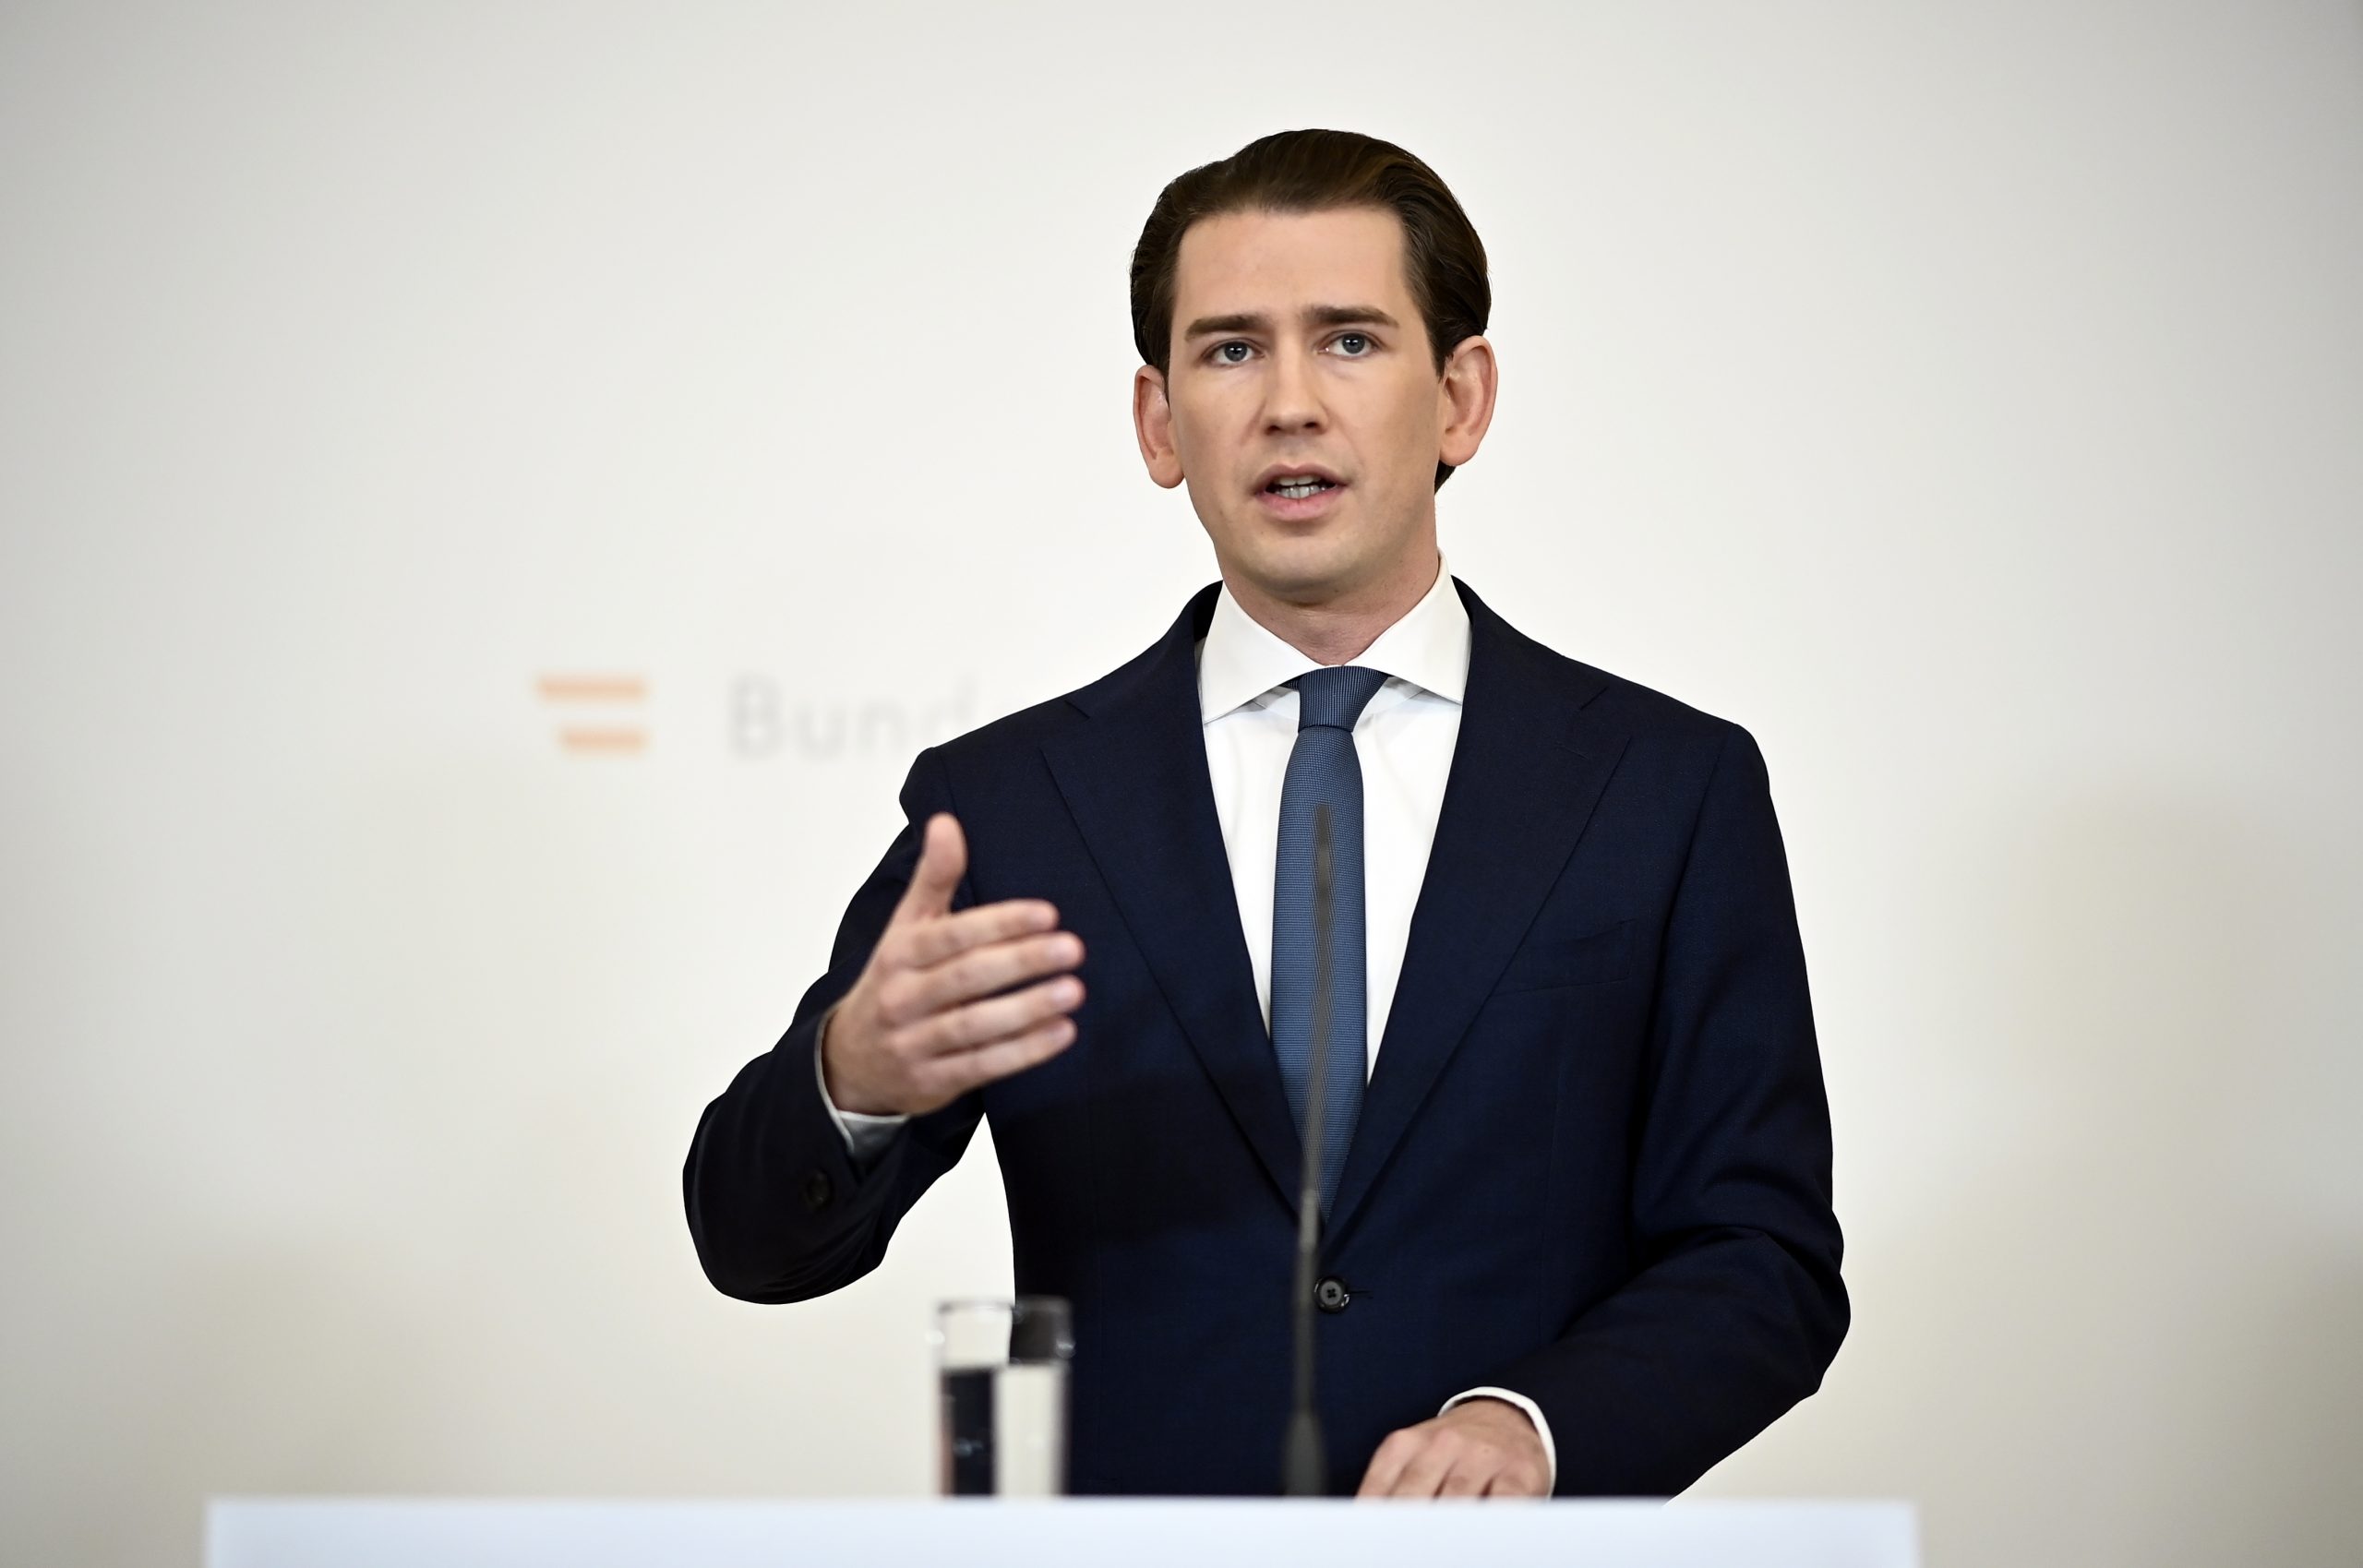 卷入腐败丑闻 奥地利总理库尔茨辞职